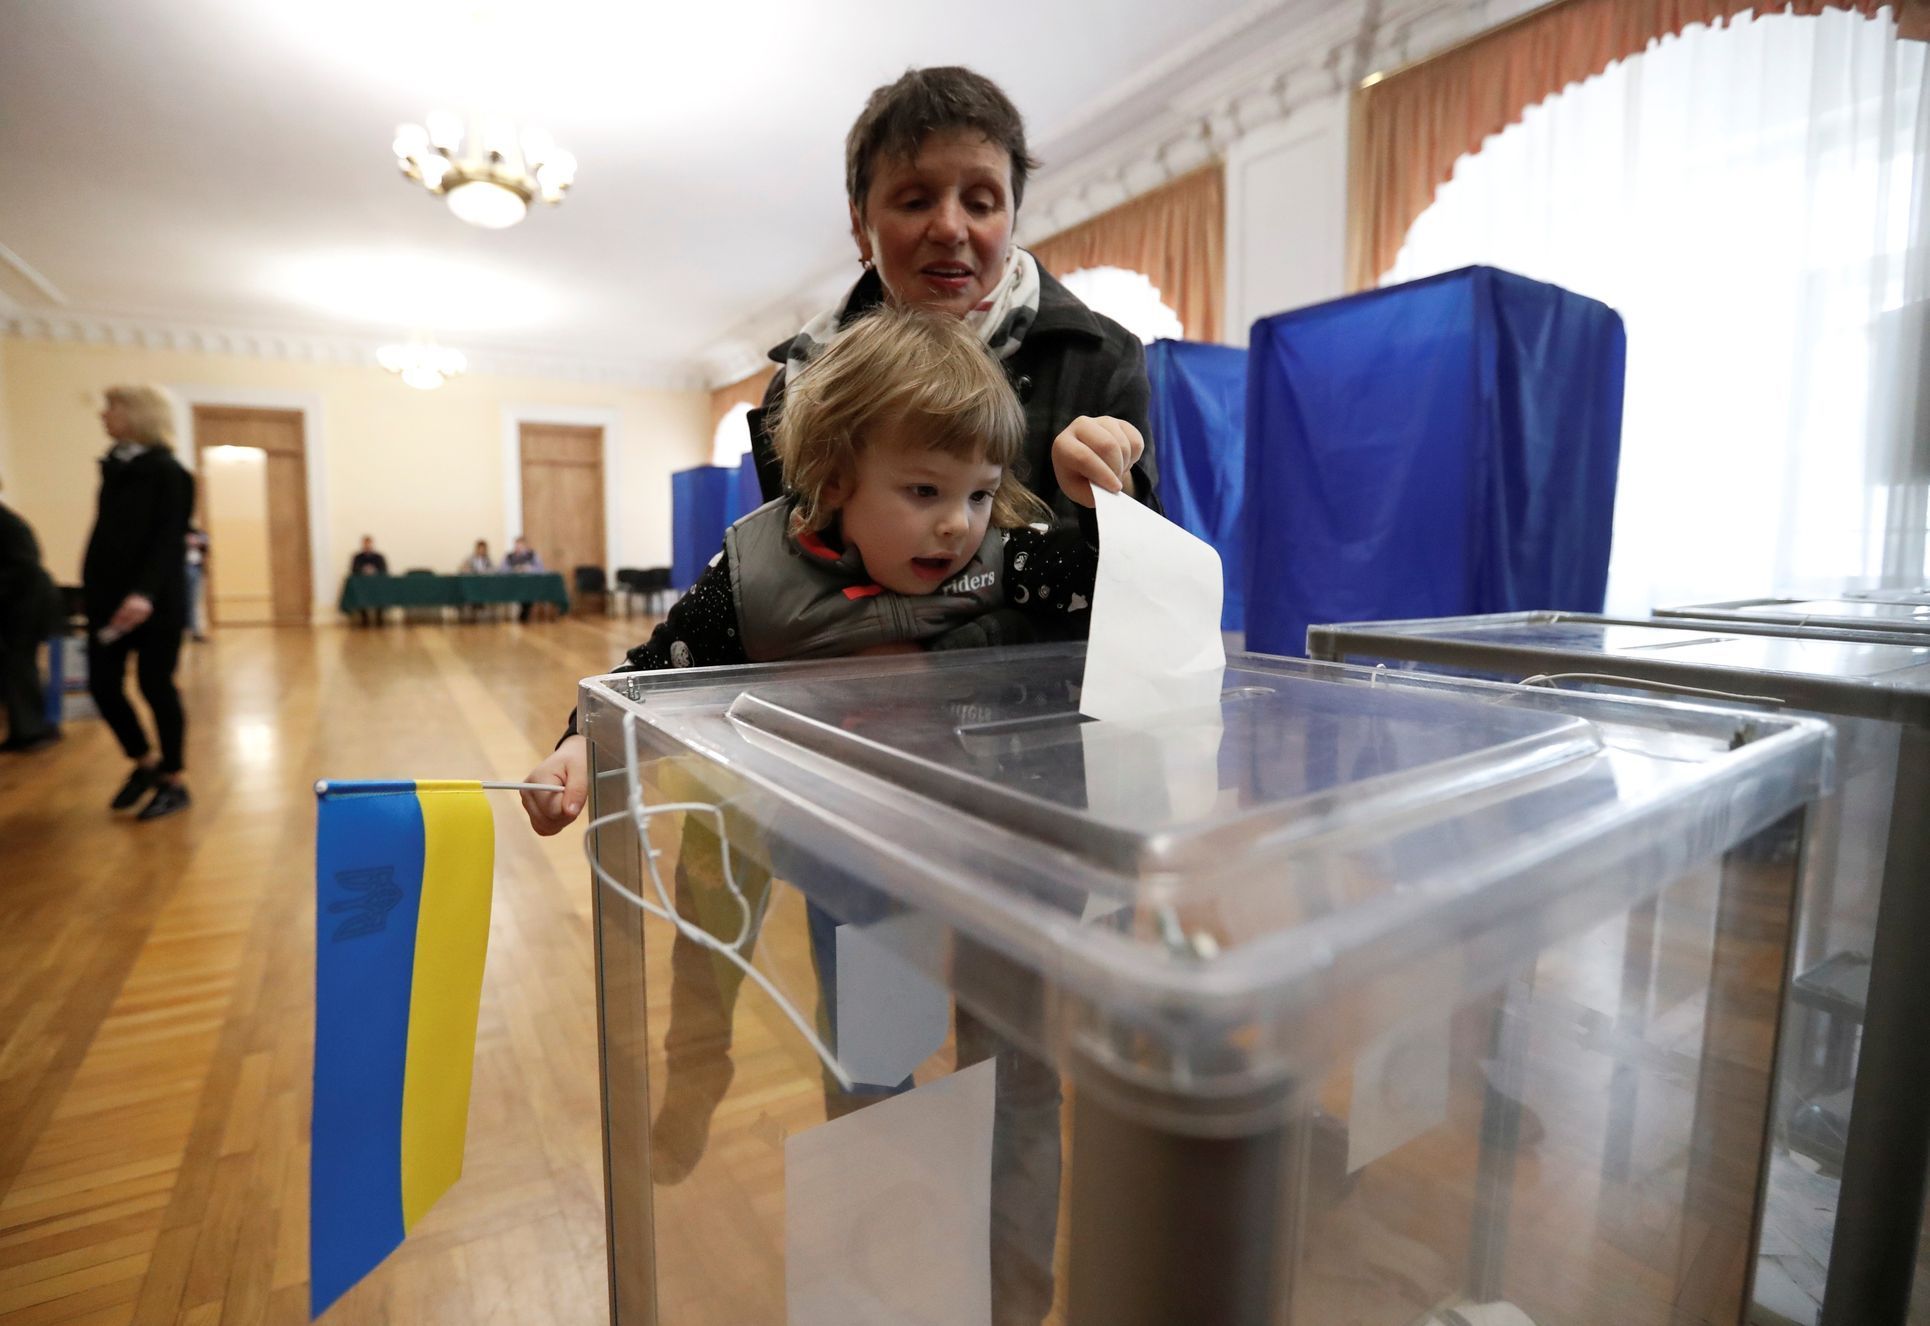 Prezidentské volby na Ukrajině